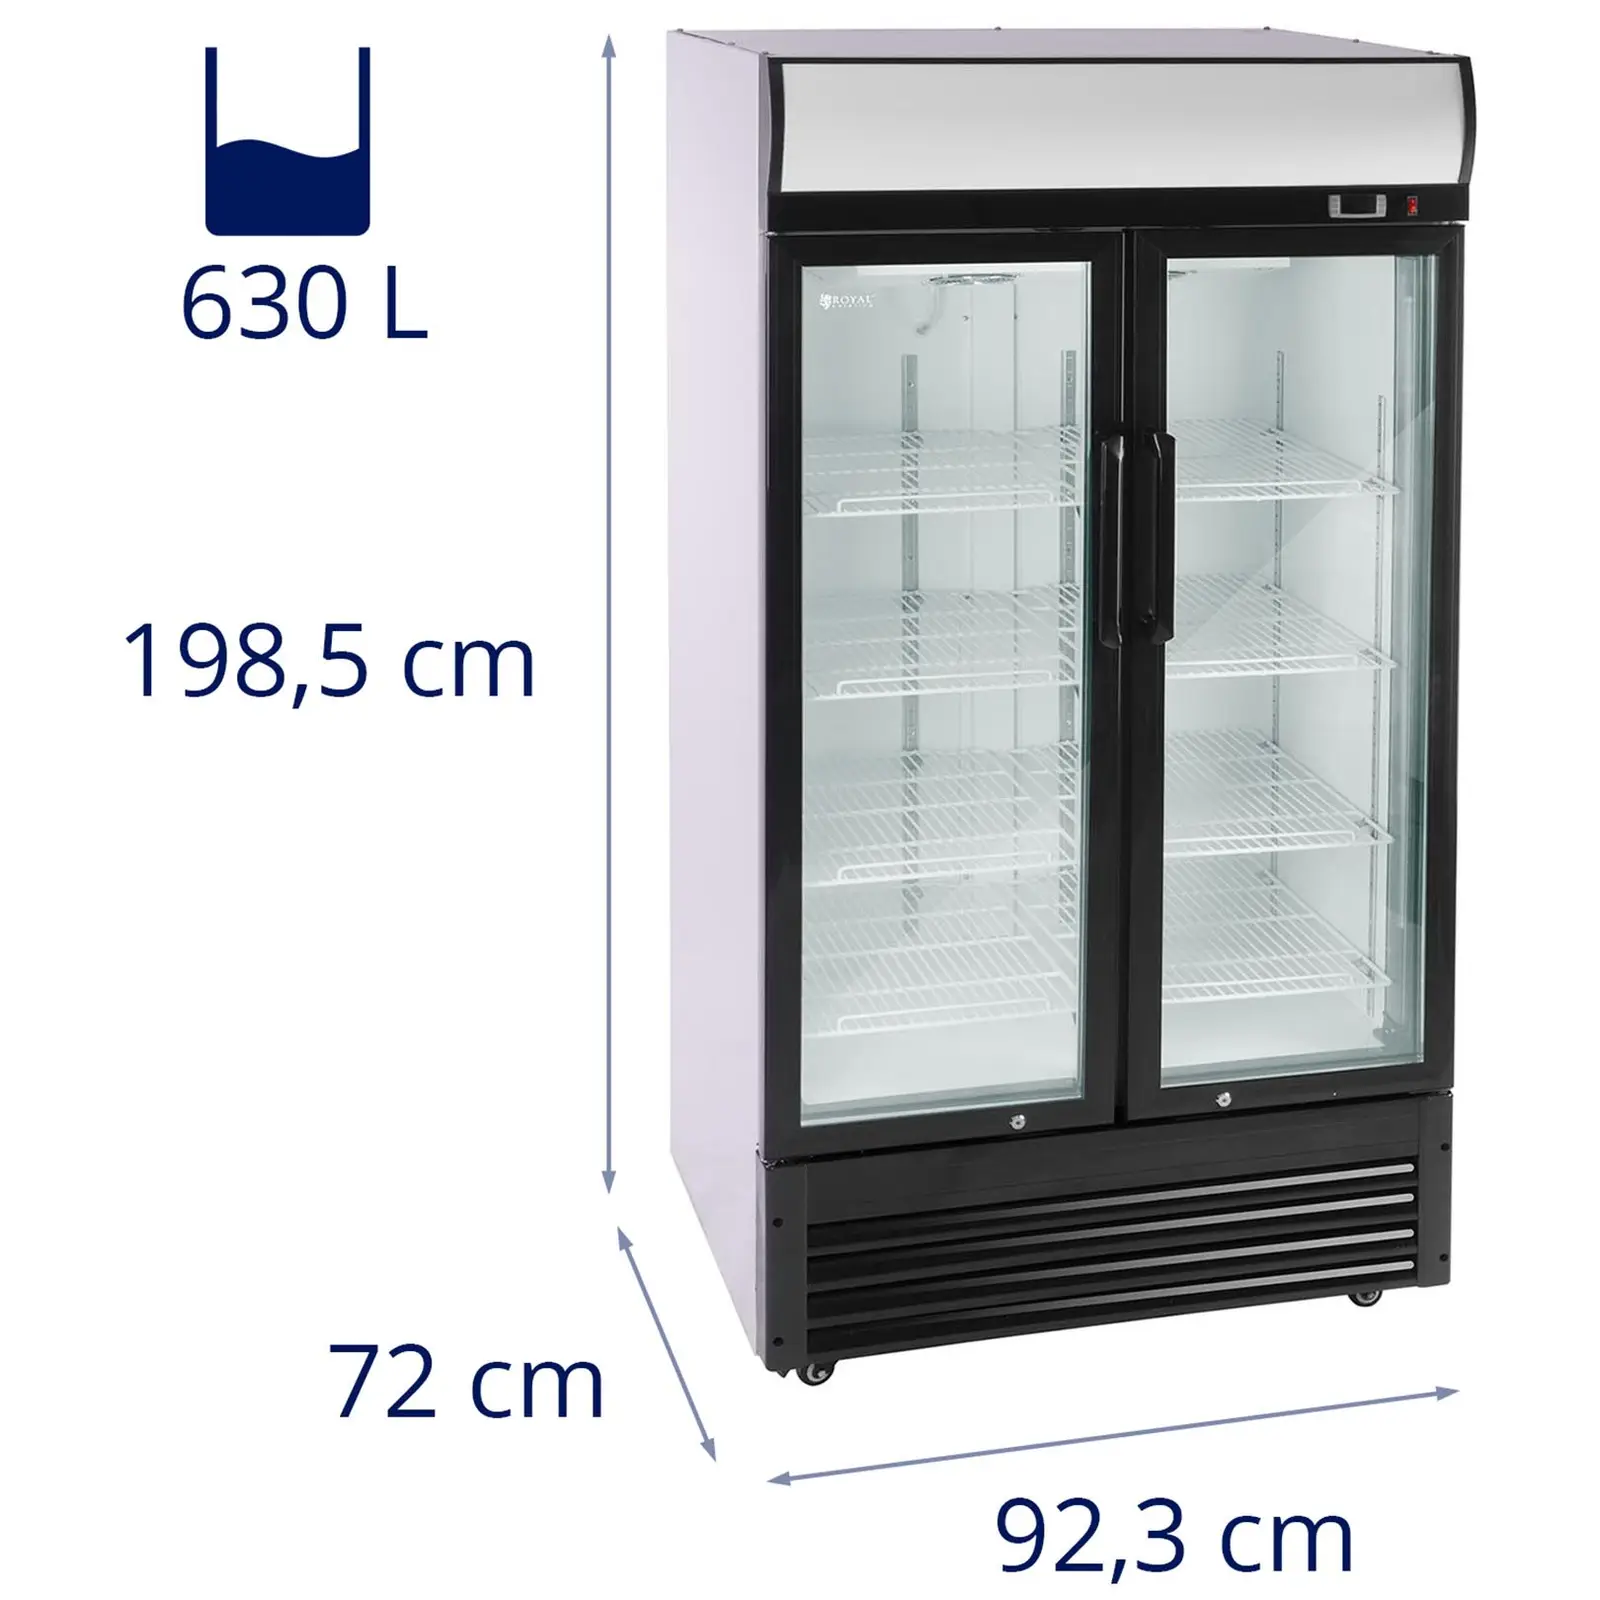 Flaschenkühlschrank - 630 L